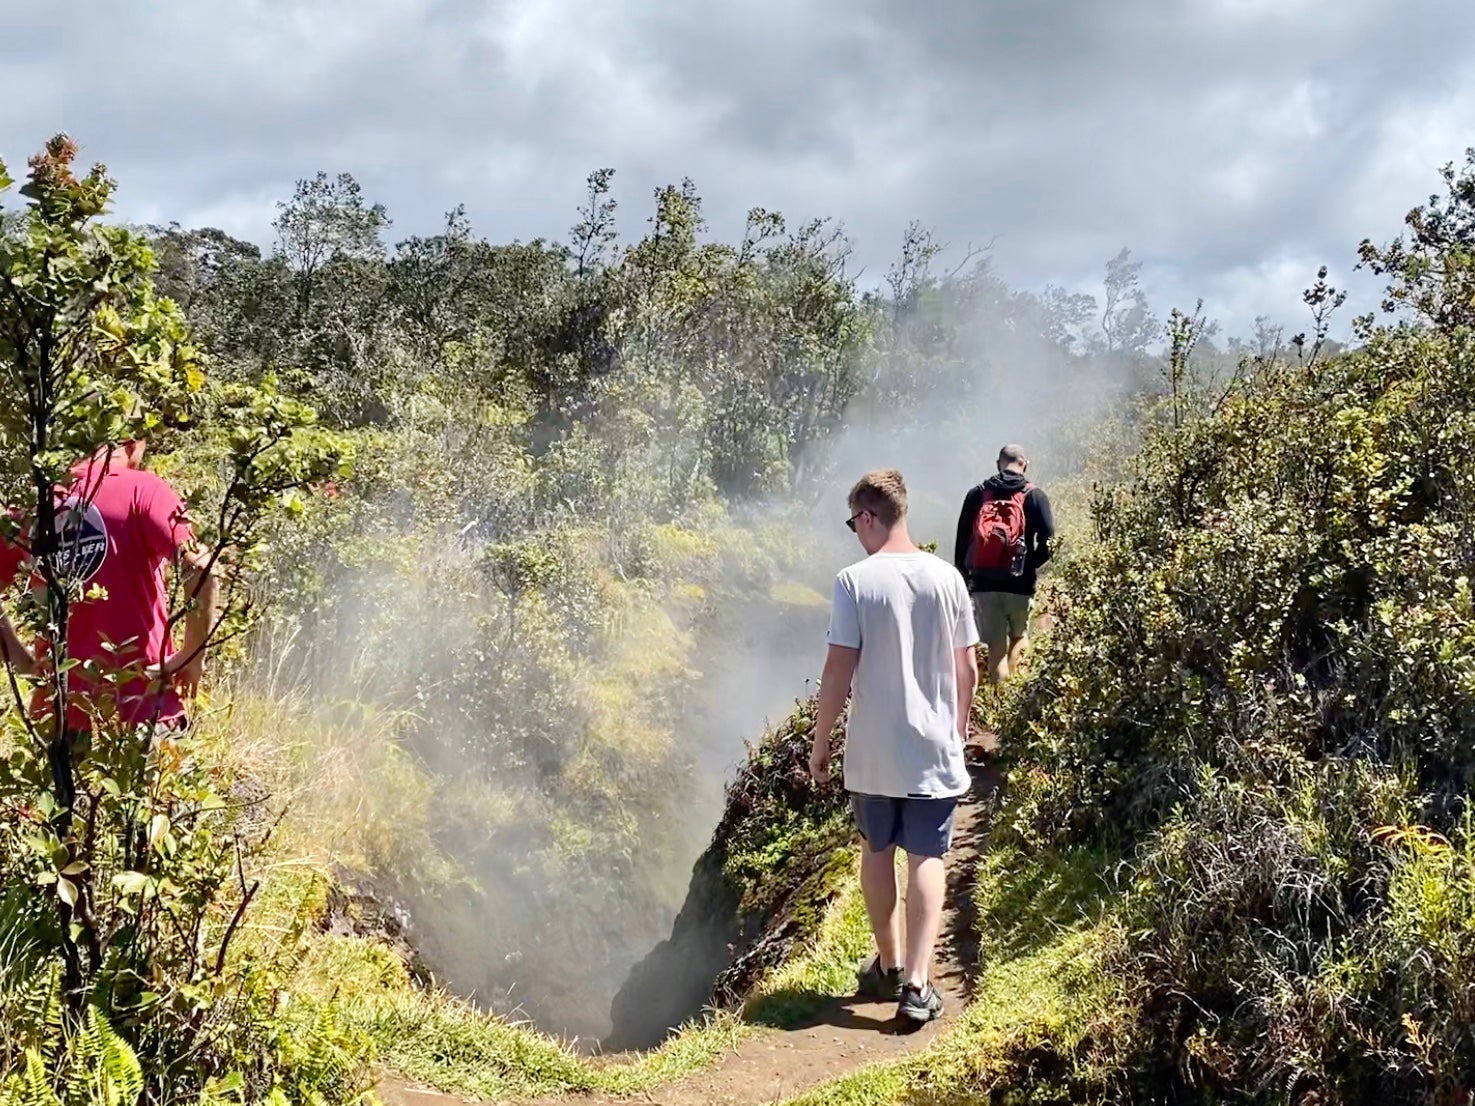  Caminar cerca del Cráter Kilauea en la Isla Grande es emocionante. (foto de 2DadsWithBaggage)